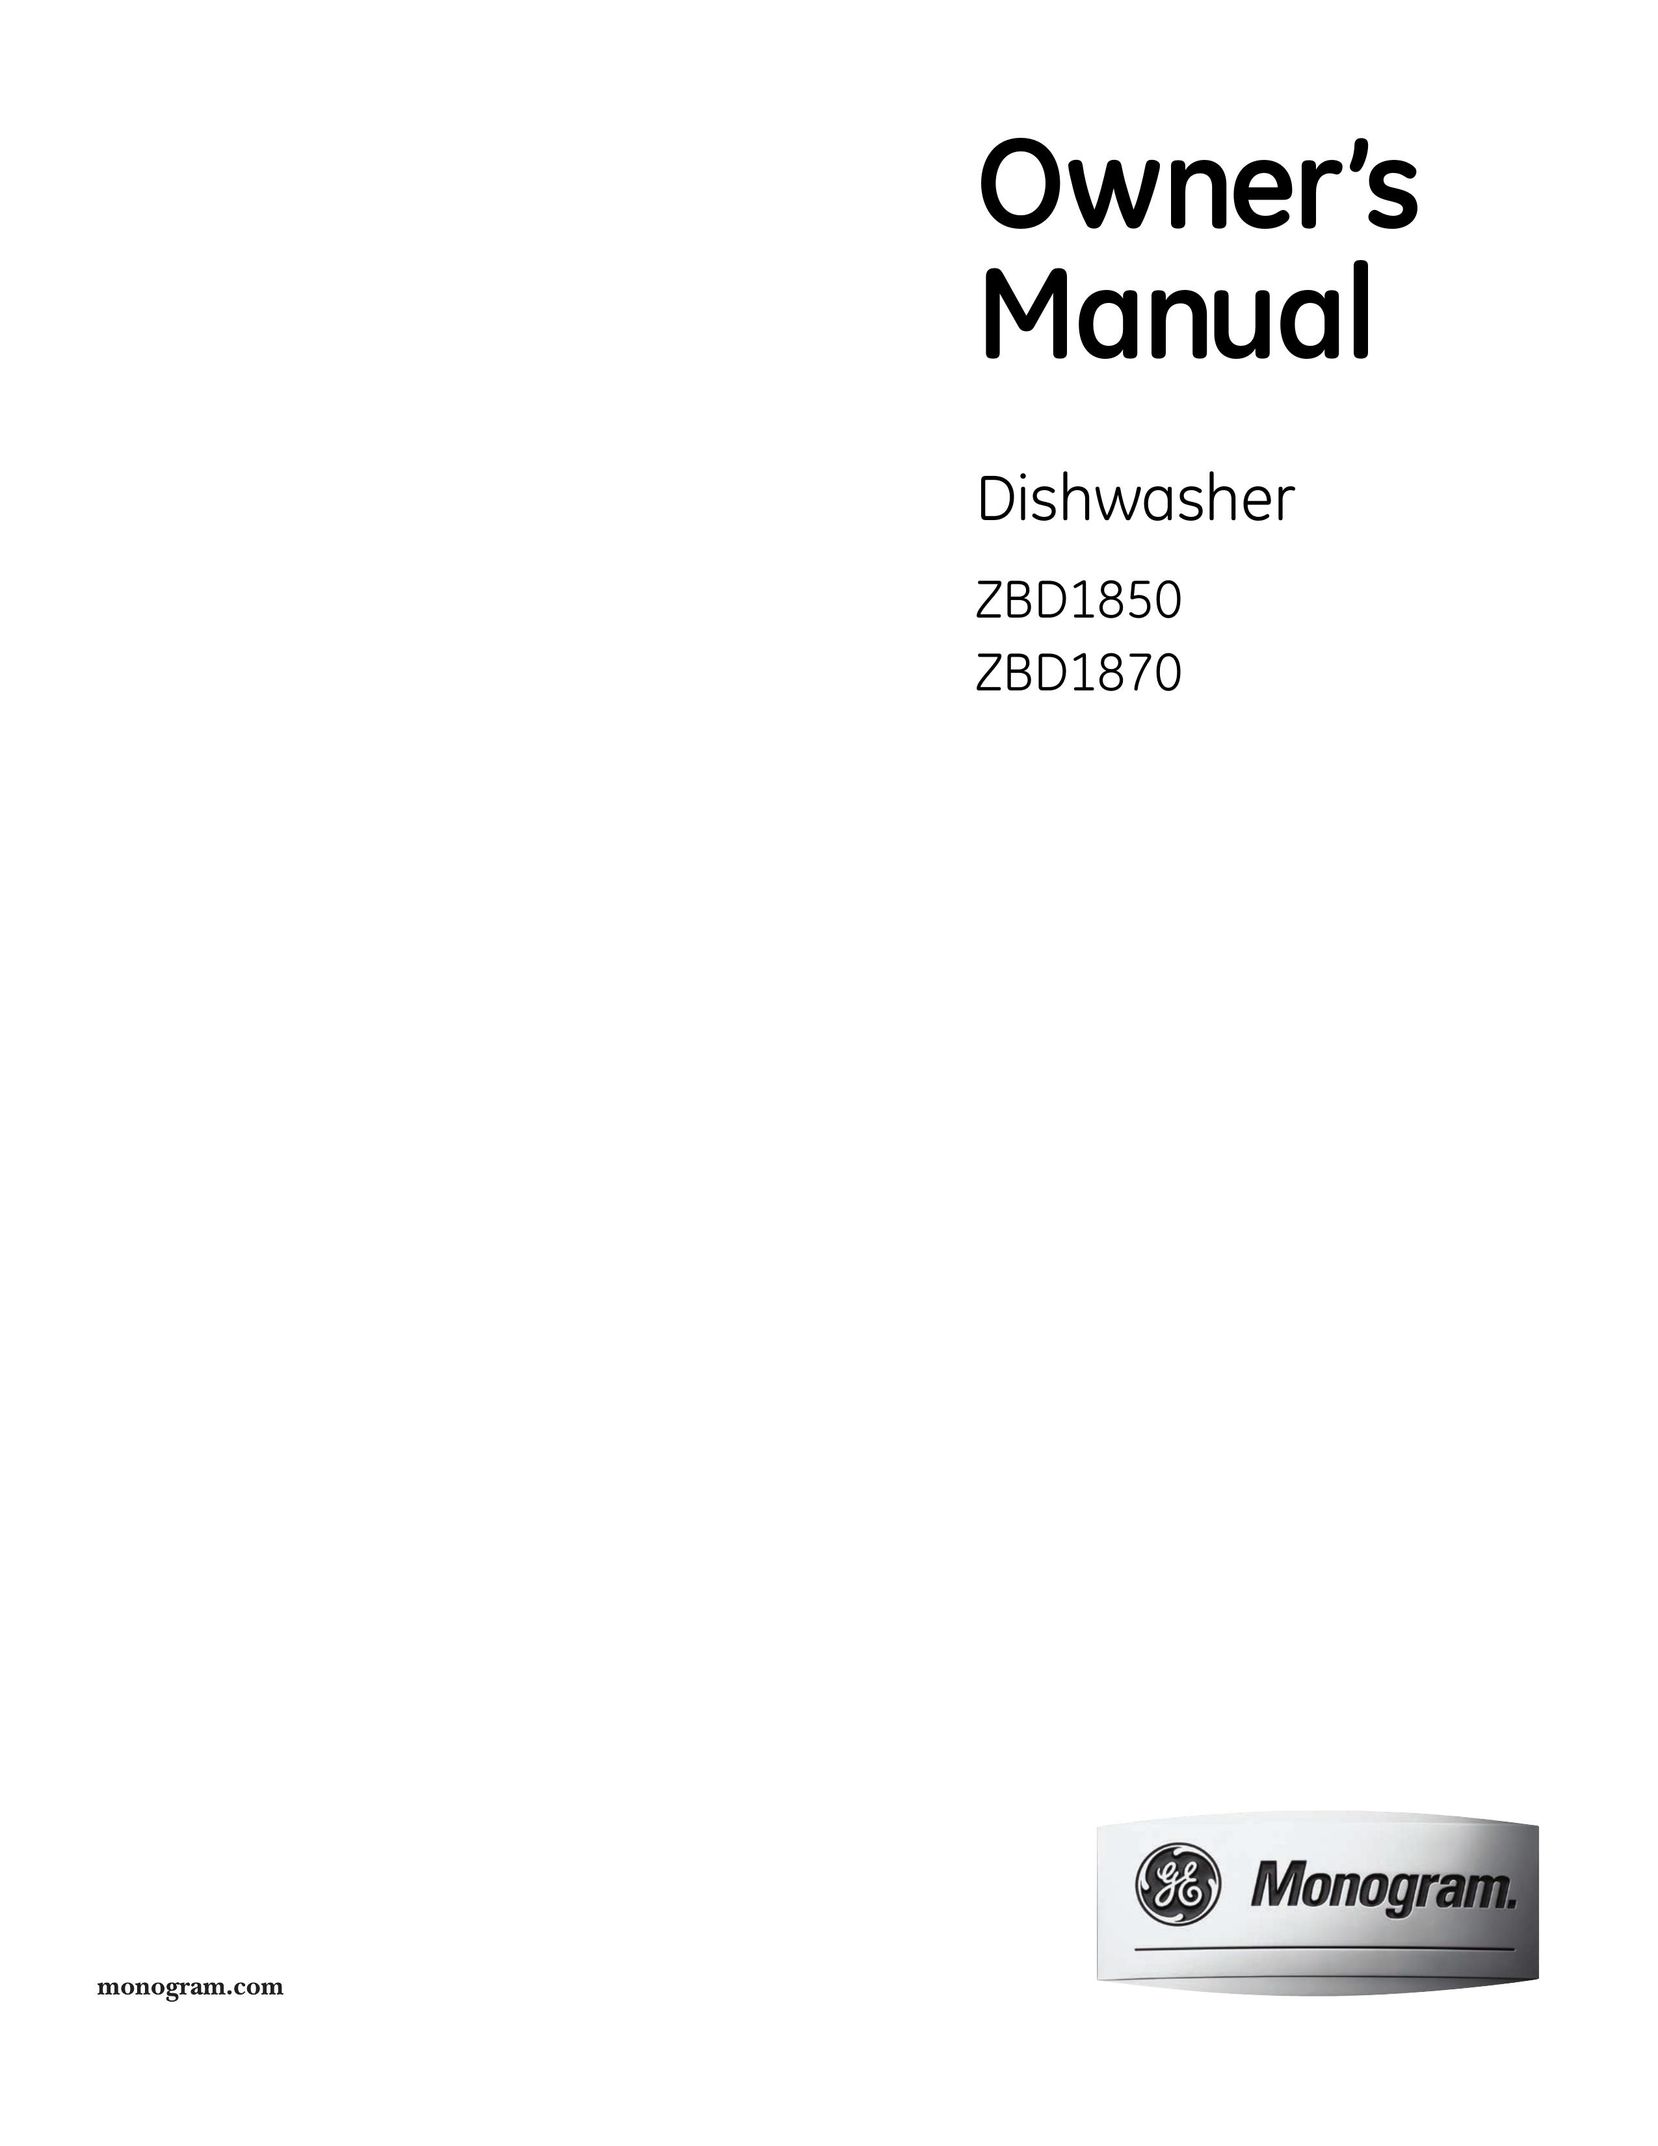 GE Monogram ZBD1850 Dishwasher User Manual